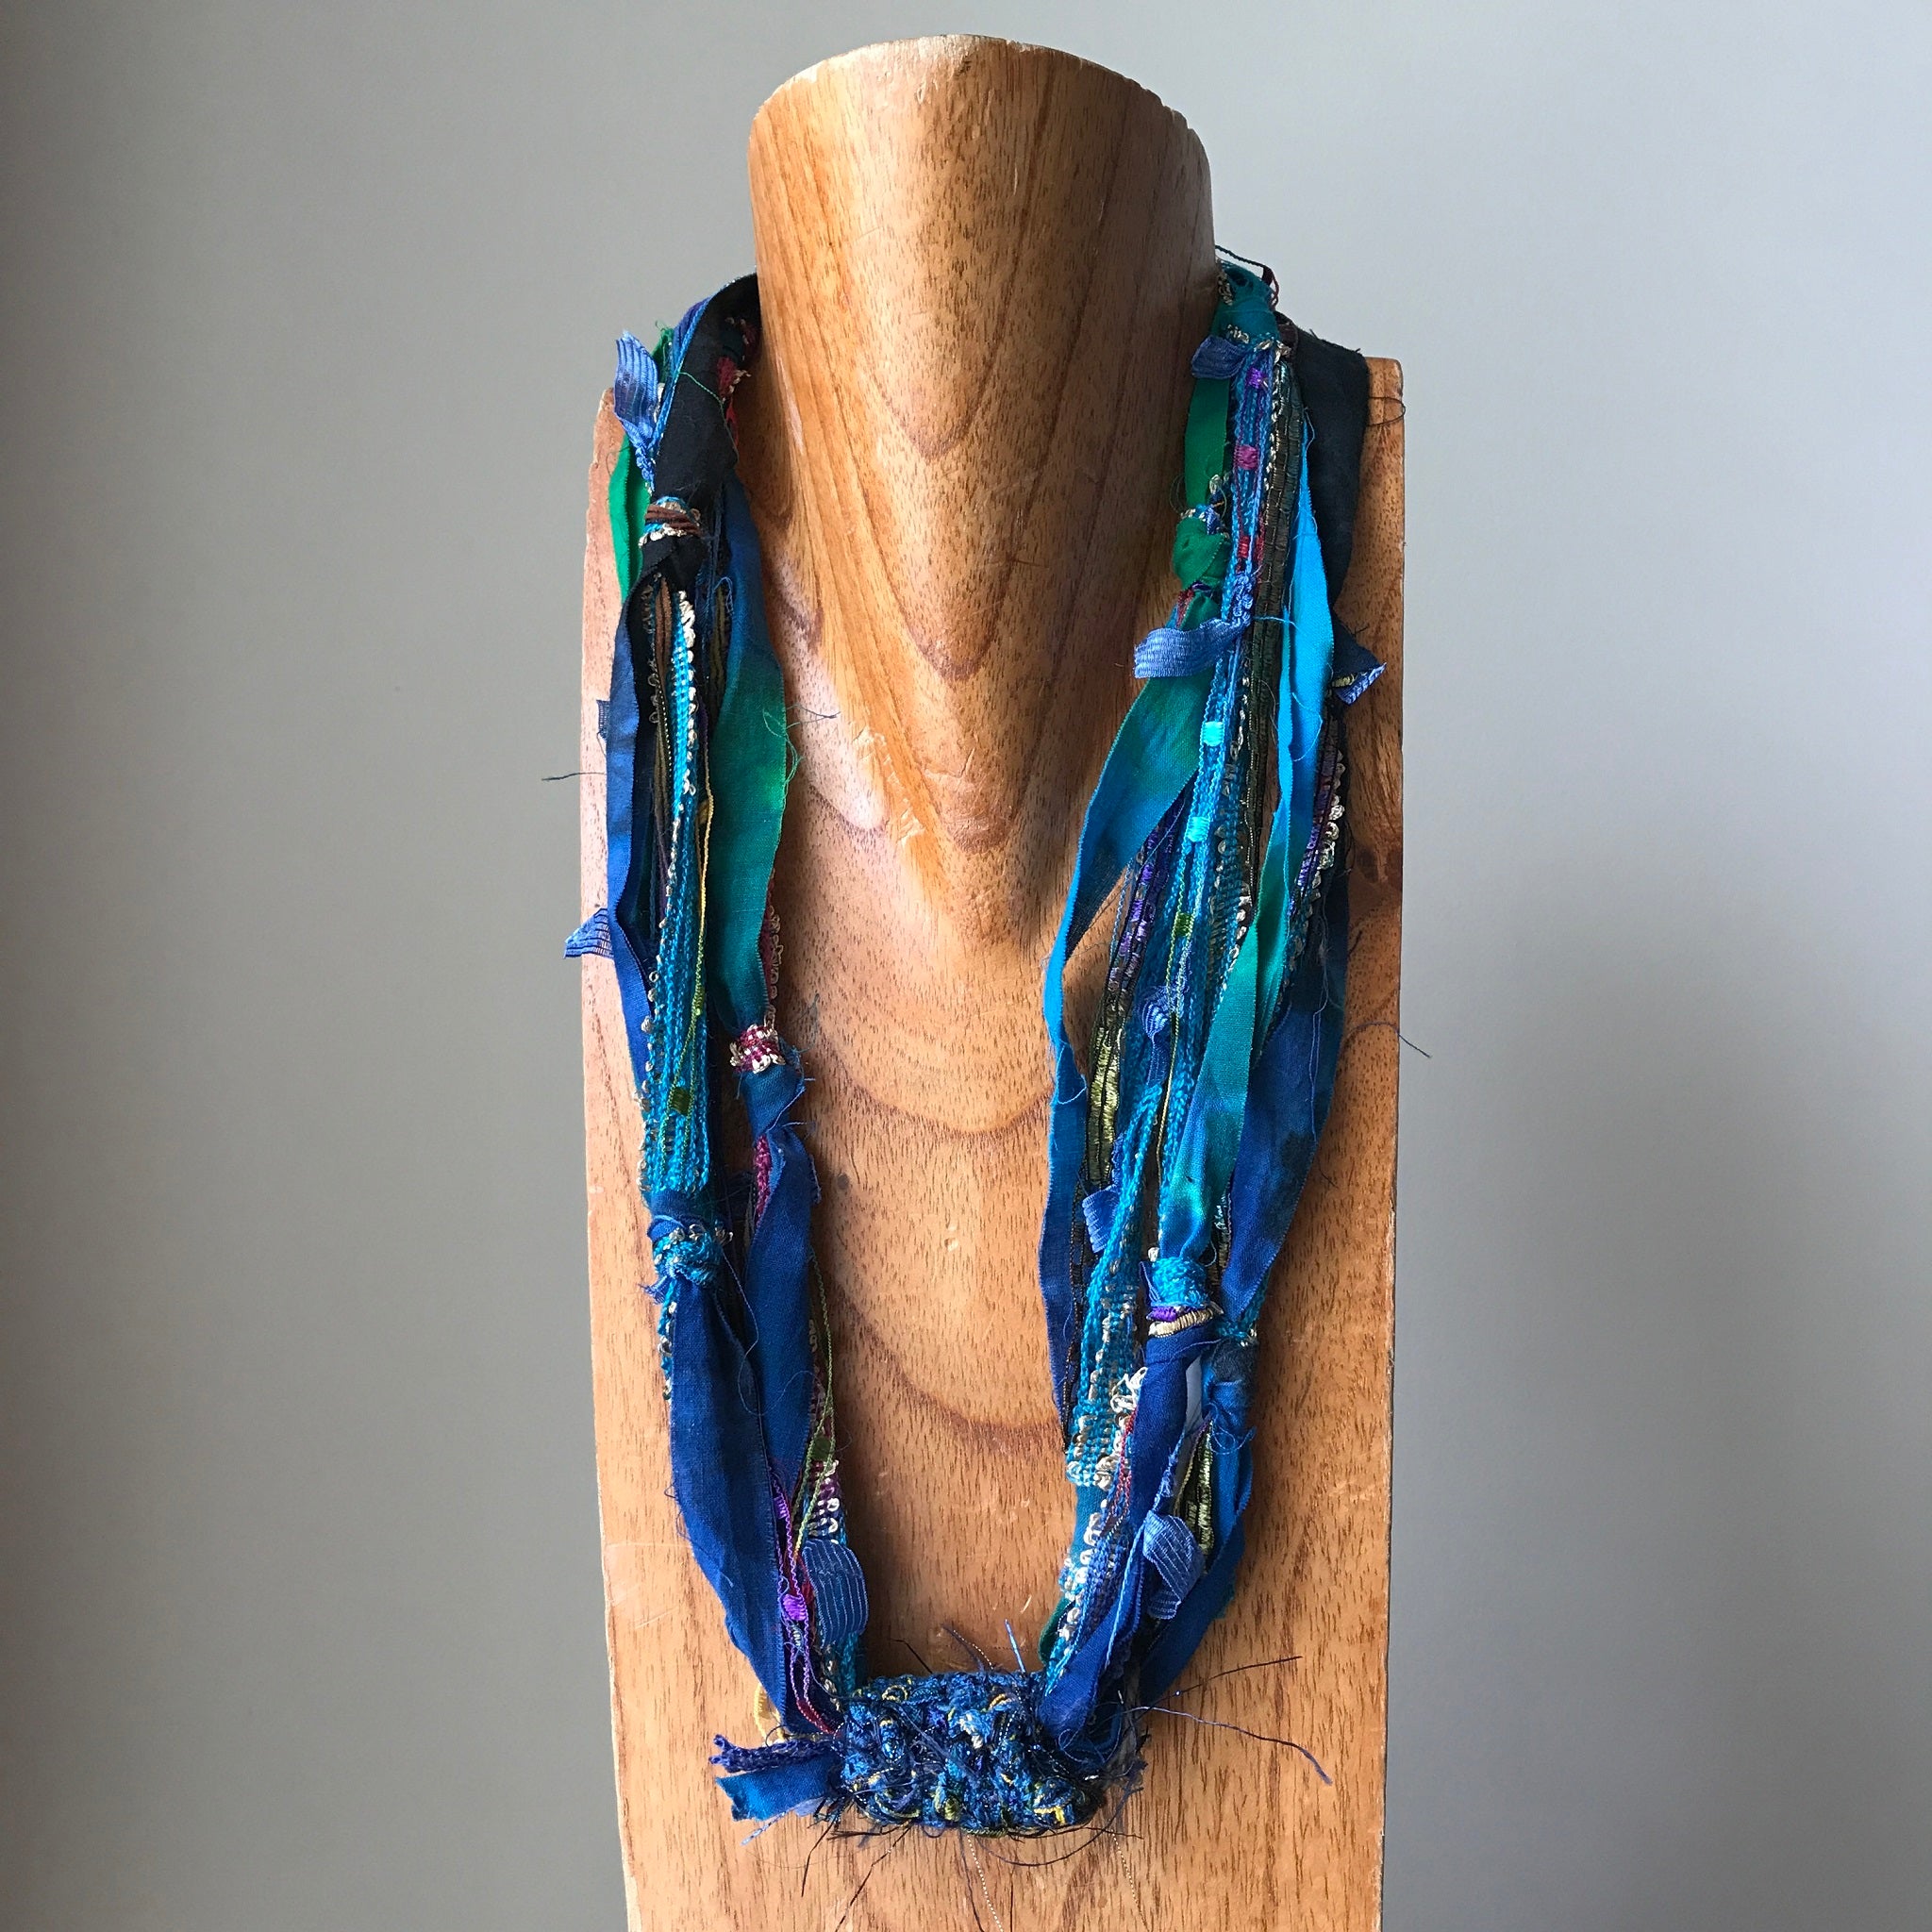 Blue Toned Fiber Necklace, (FN716)